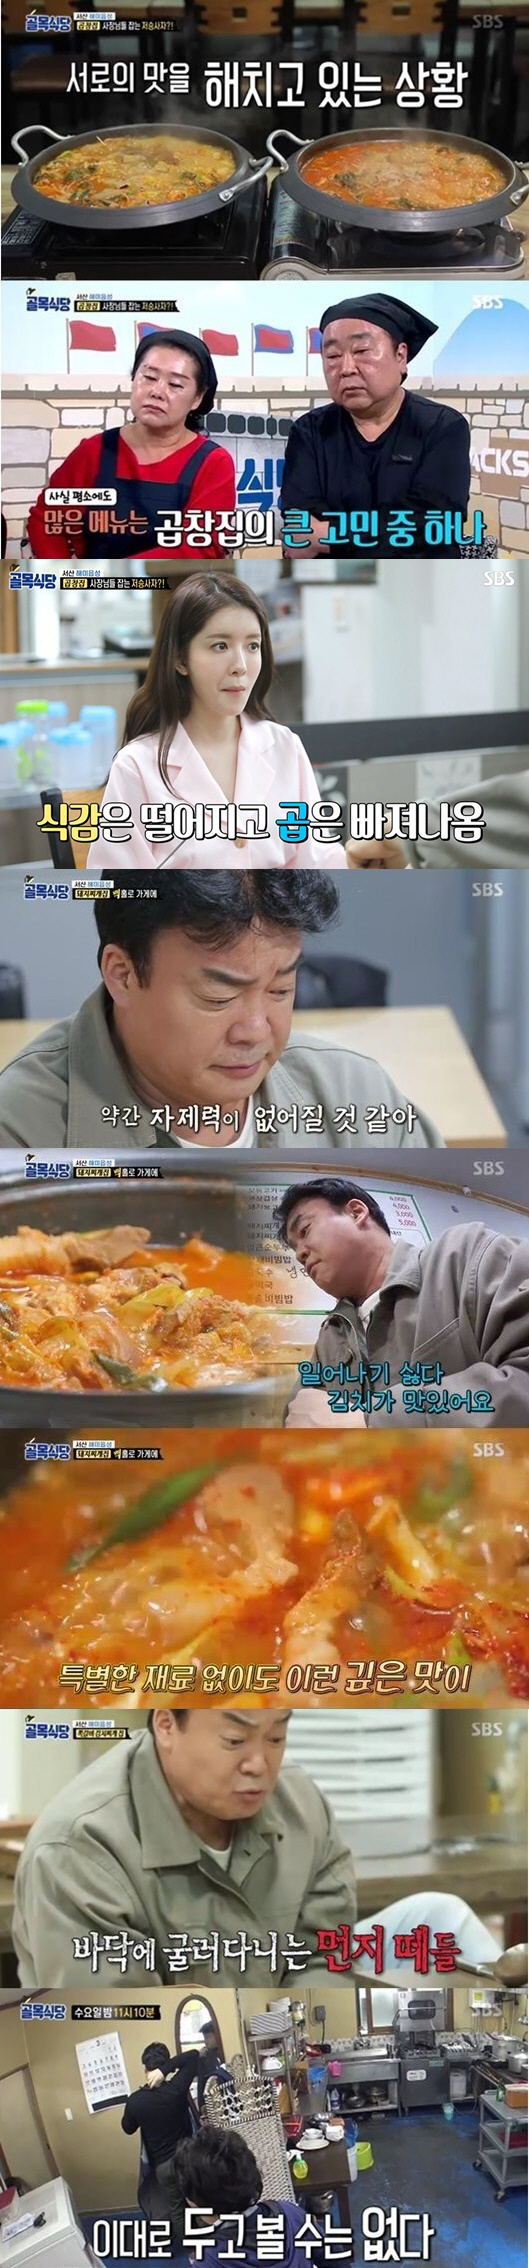 ‘골목식당’ 새 MC 정인선의 첫 시식평 “샴푸향이 나요..” ‘7.9%’ 최고의 1분